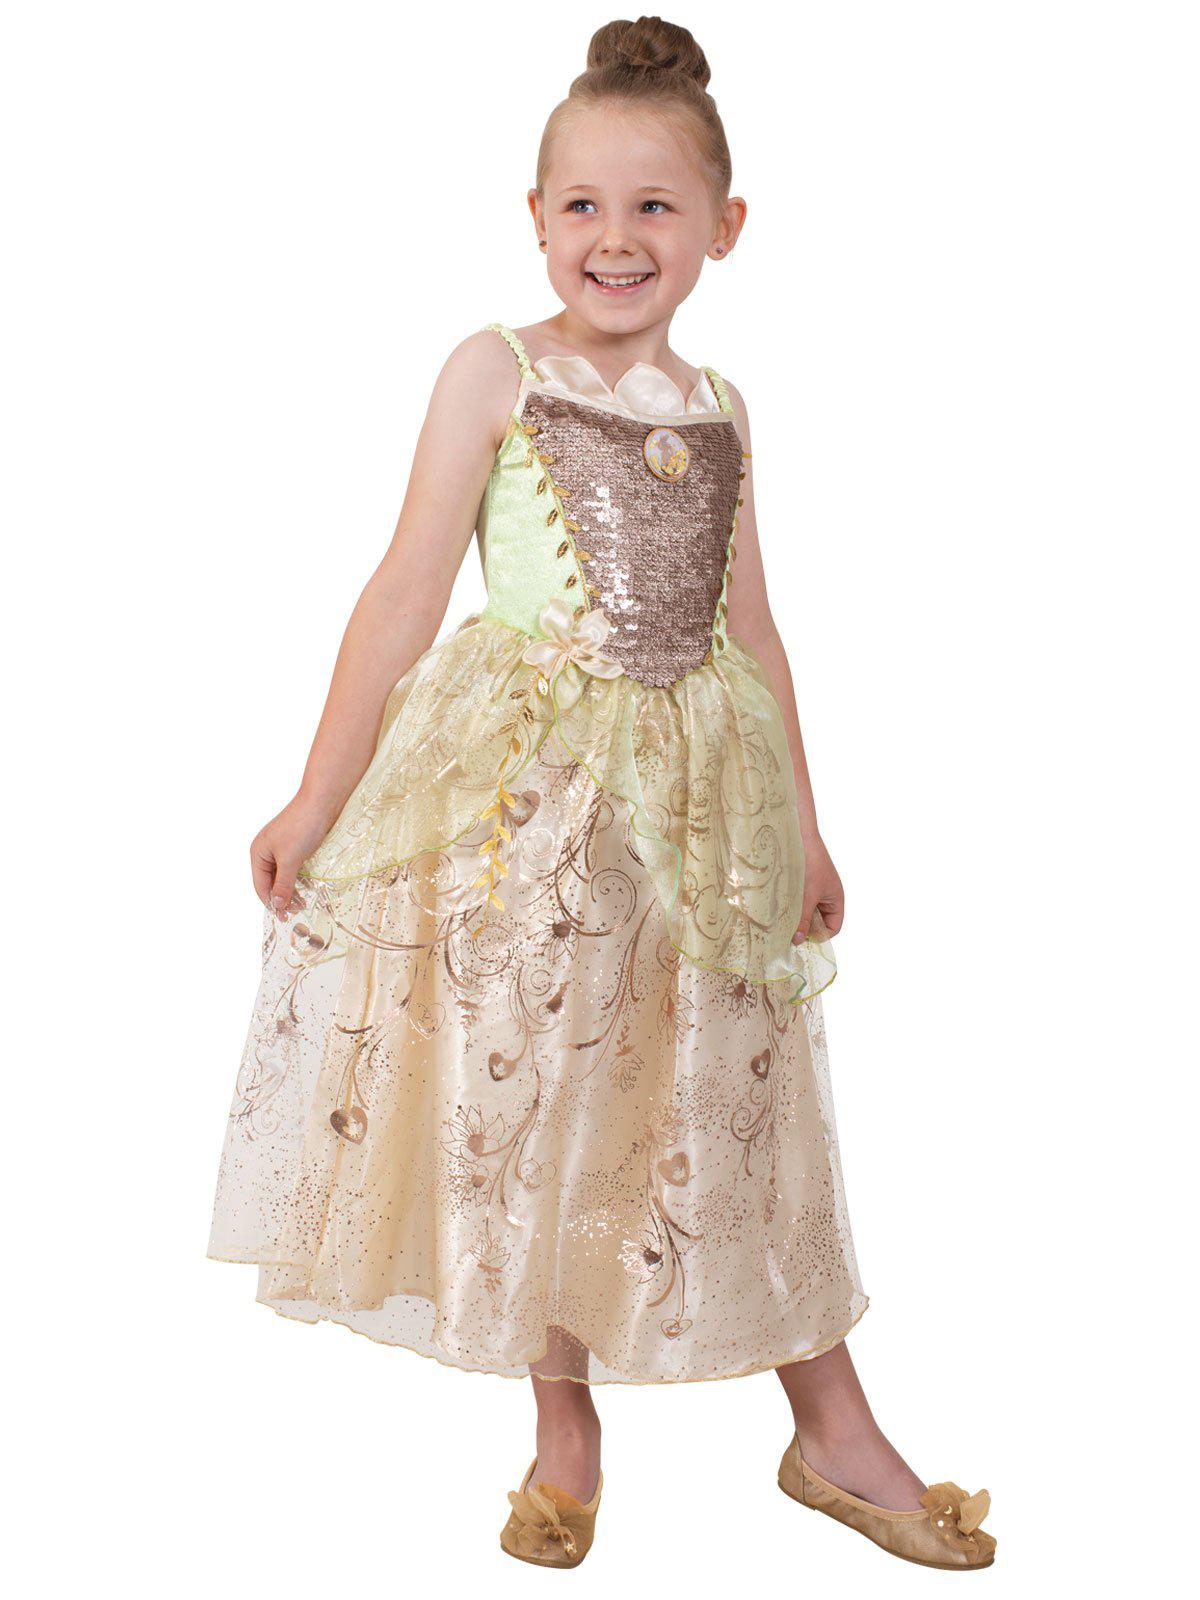 Tiana Ultimate Princess Celebration Costume Kids